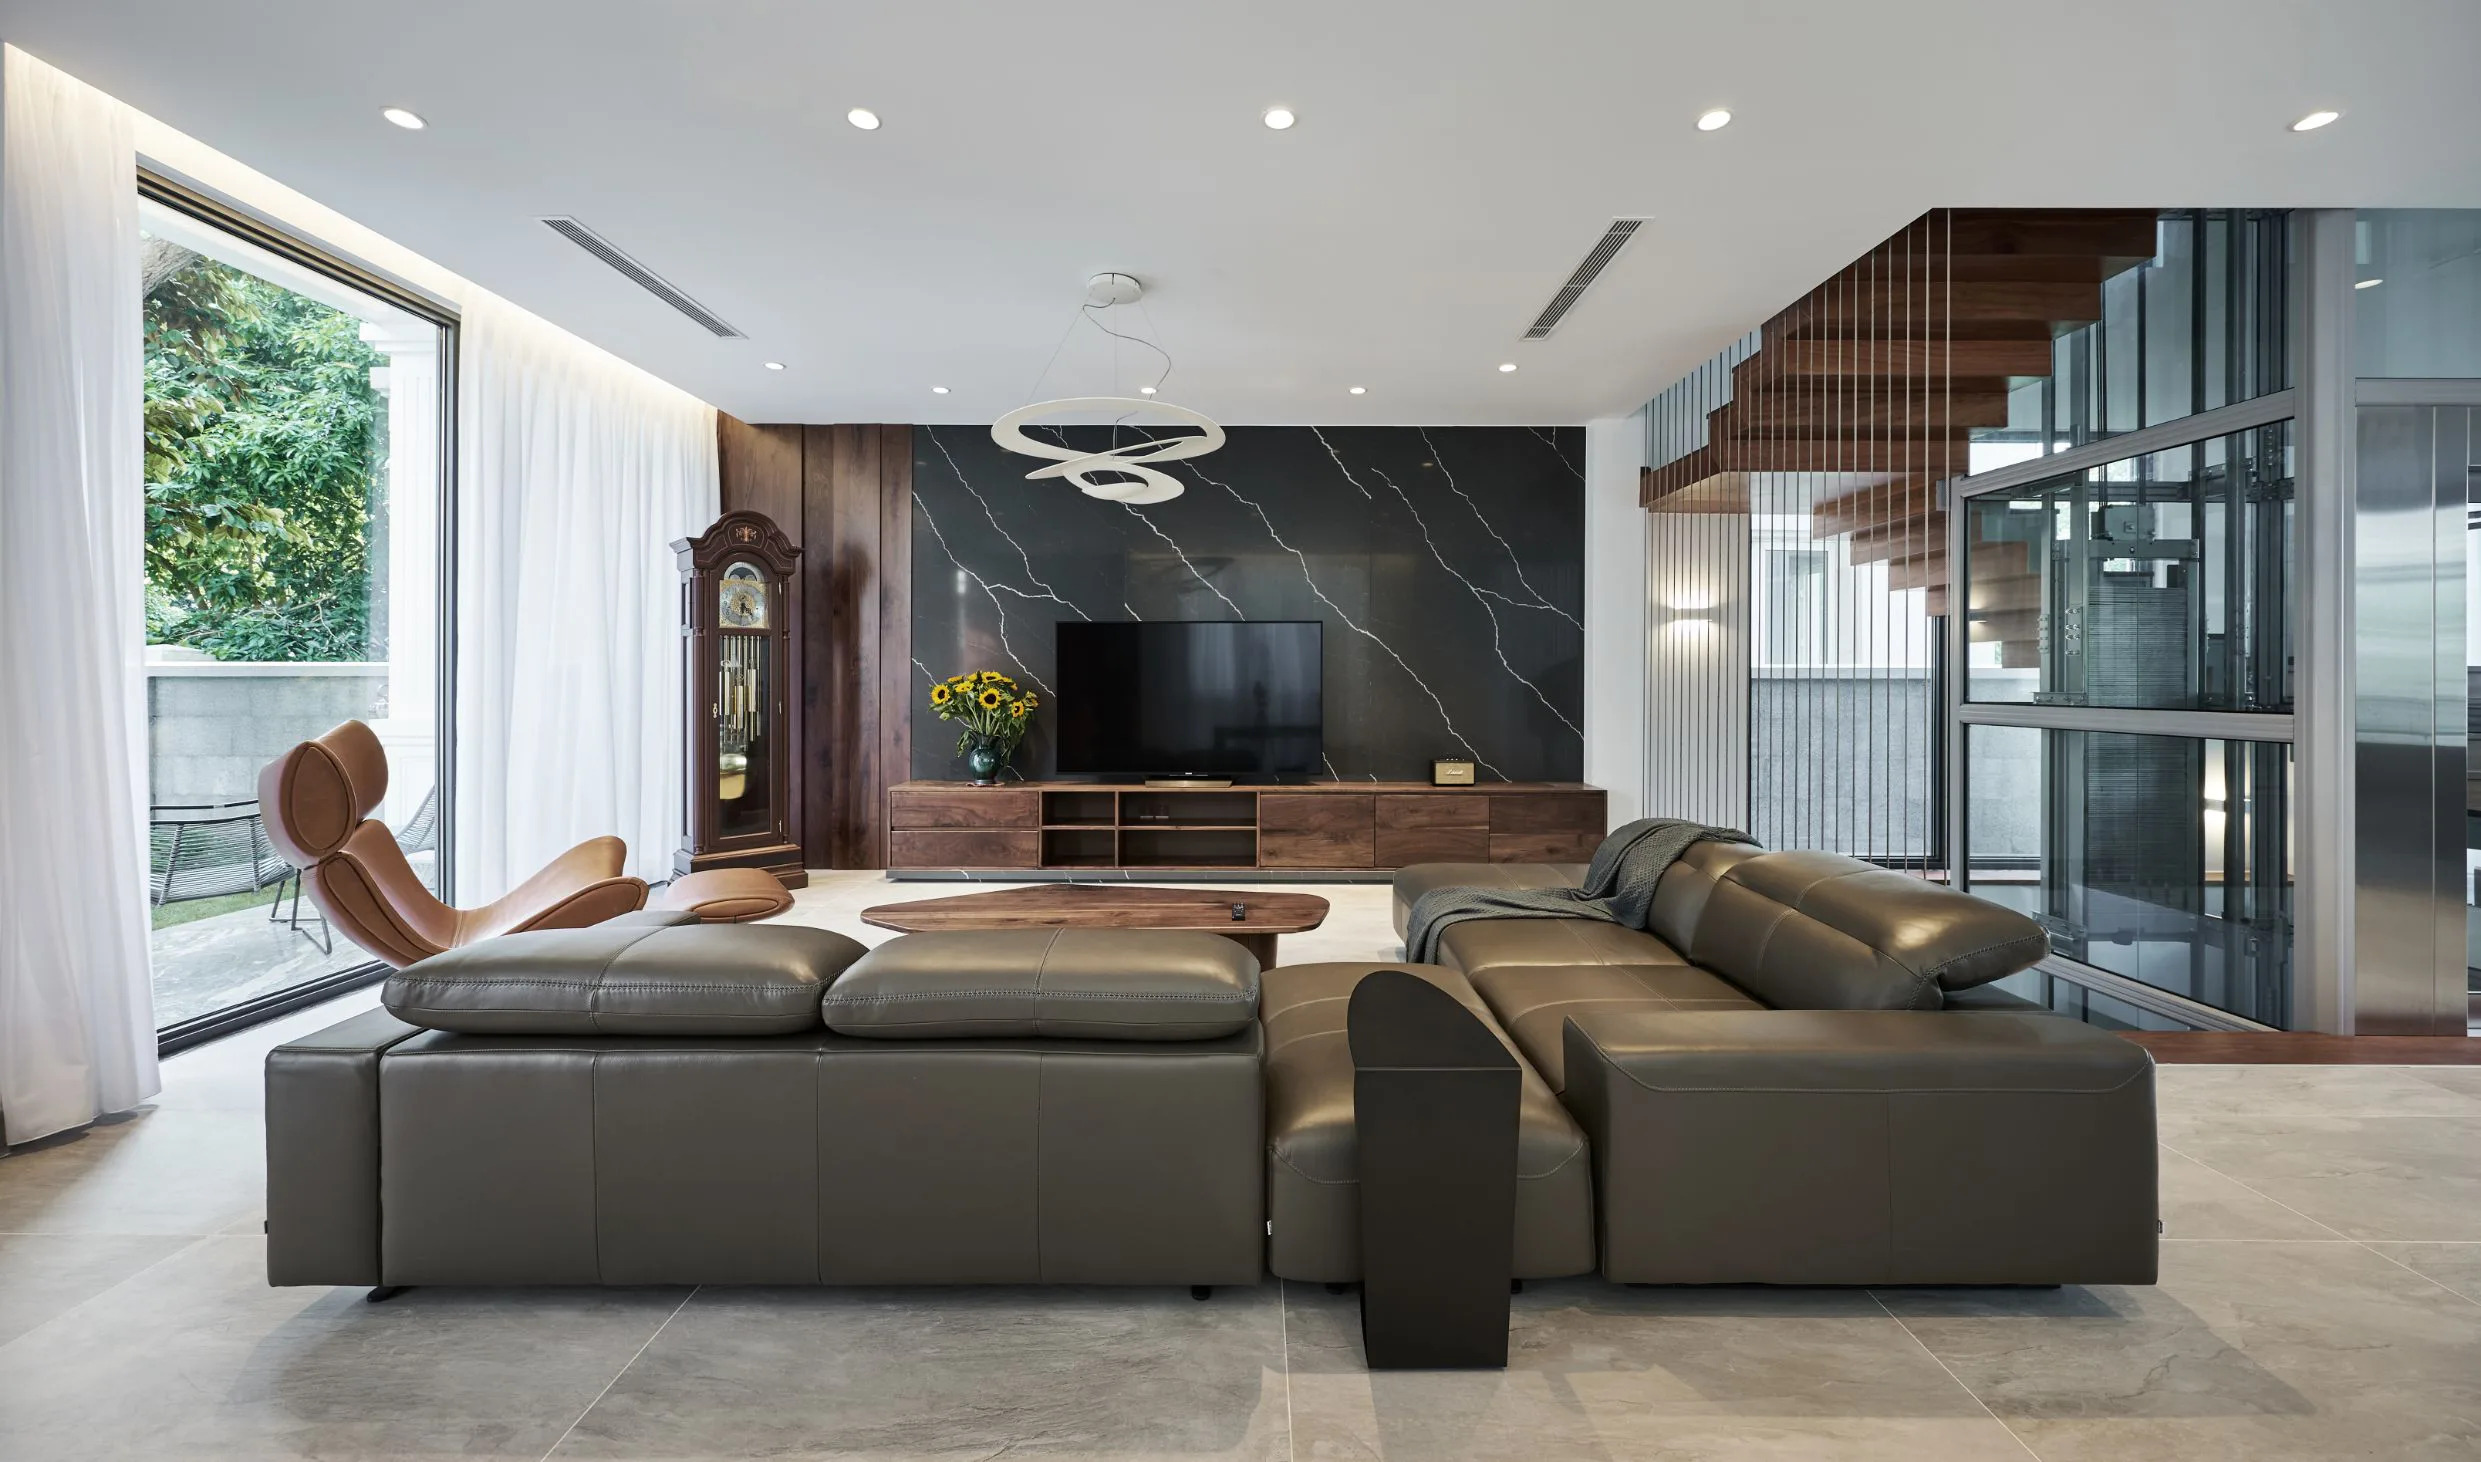 Mẫu thiết kế phòng khách biệt thự với nội thất bằng gỗ óc chó kết hợp cùng bộ sofa chữ L sang trọng